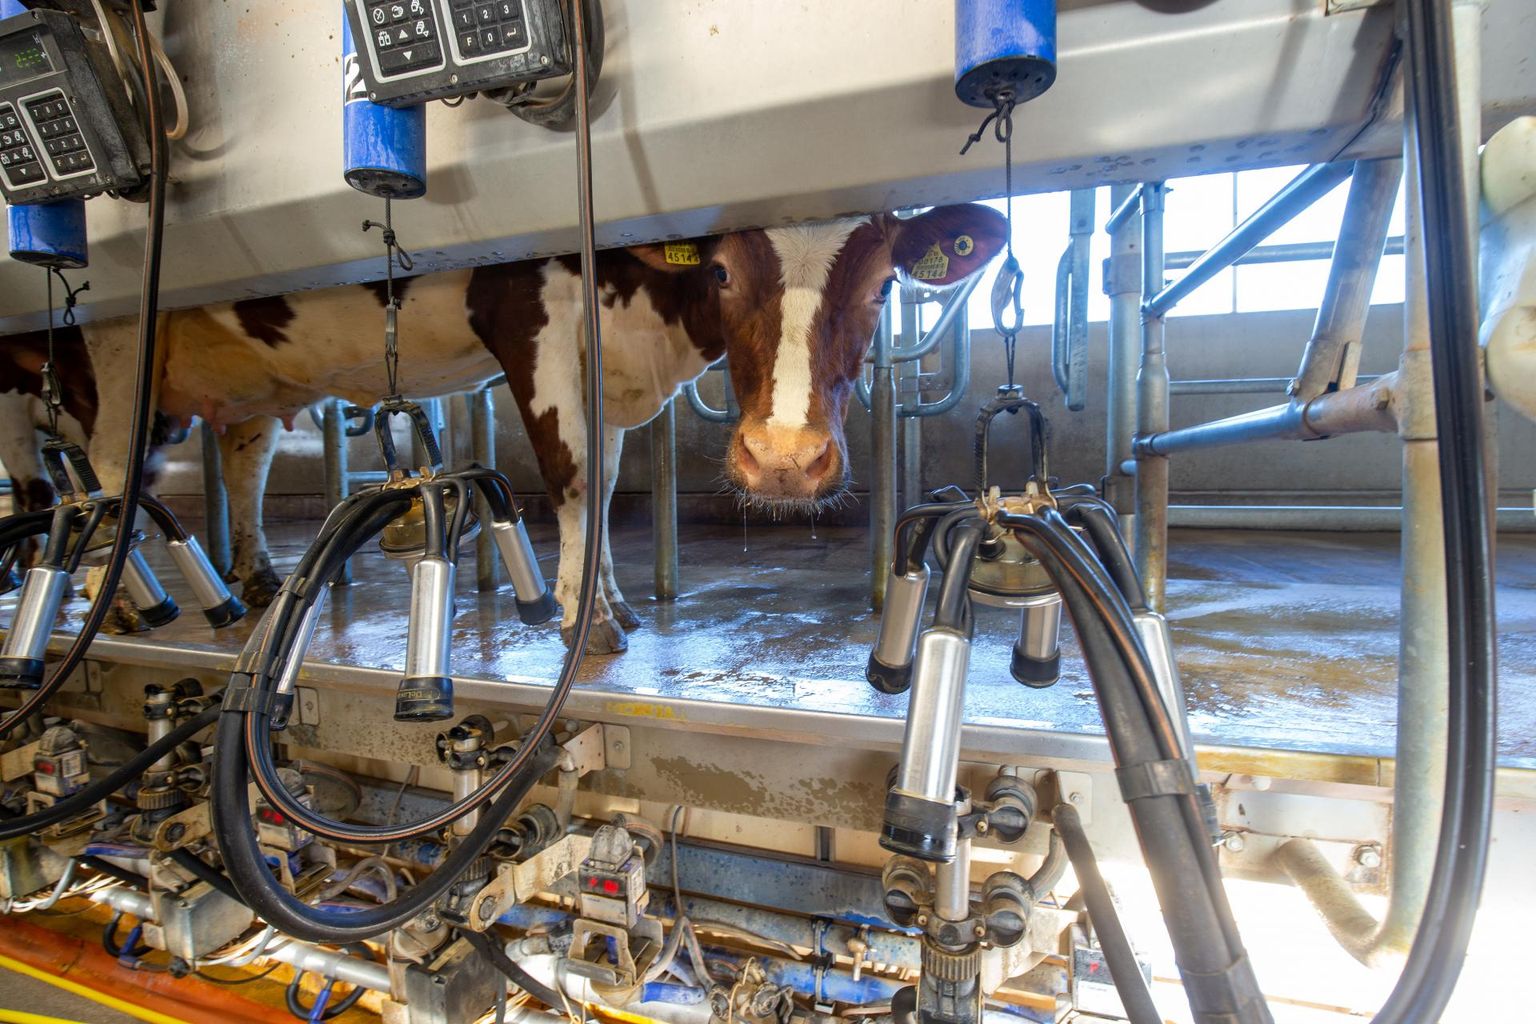 Farmitöös puuduvad kokkuhoiukohad, inimesi koondada ei saa, sest lehmad vajavad iga päev lüpsmist.